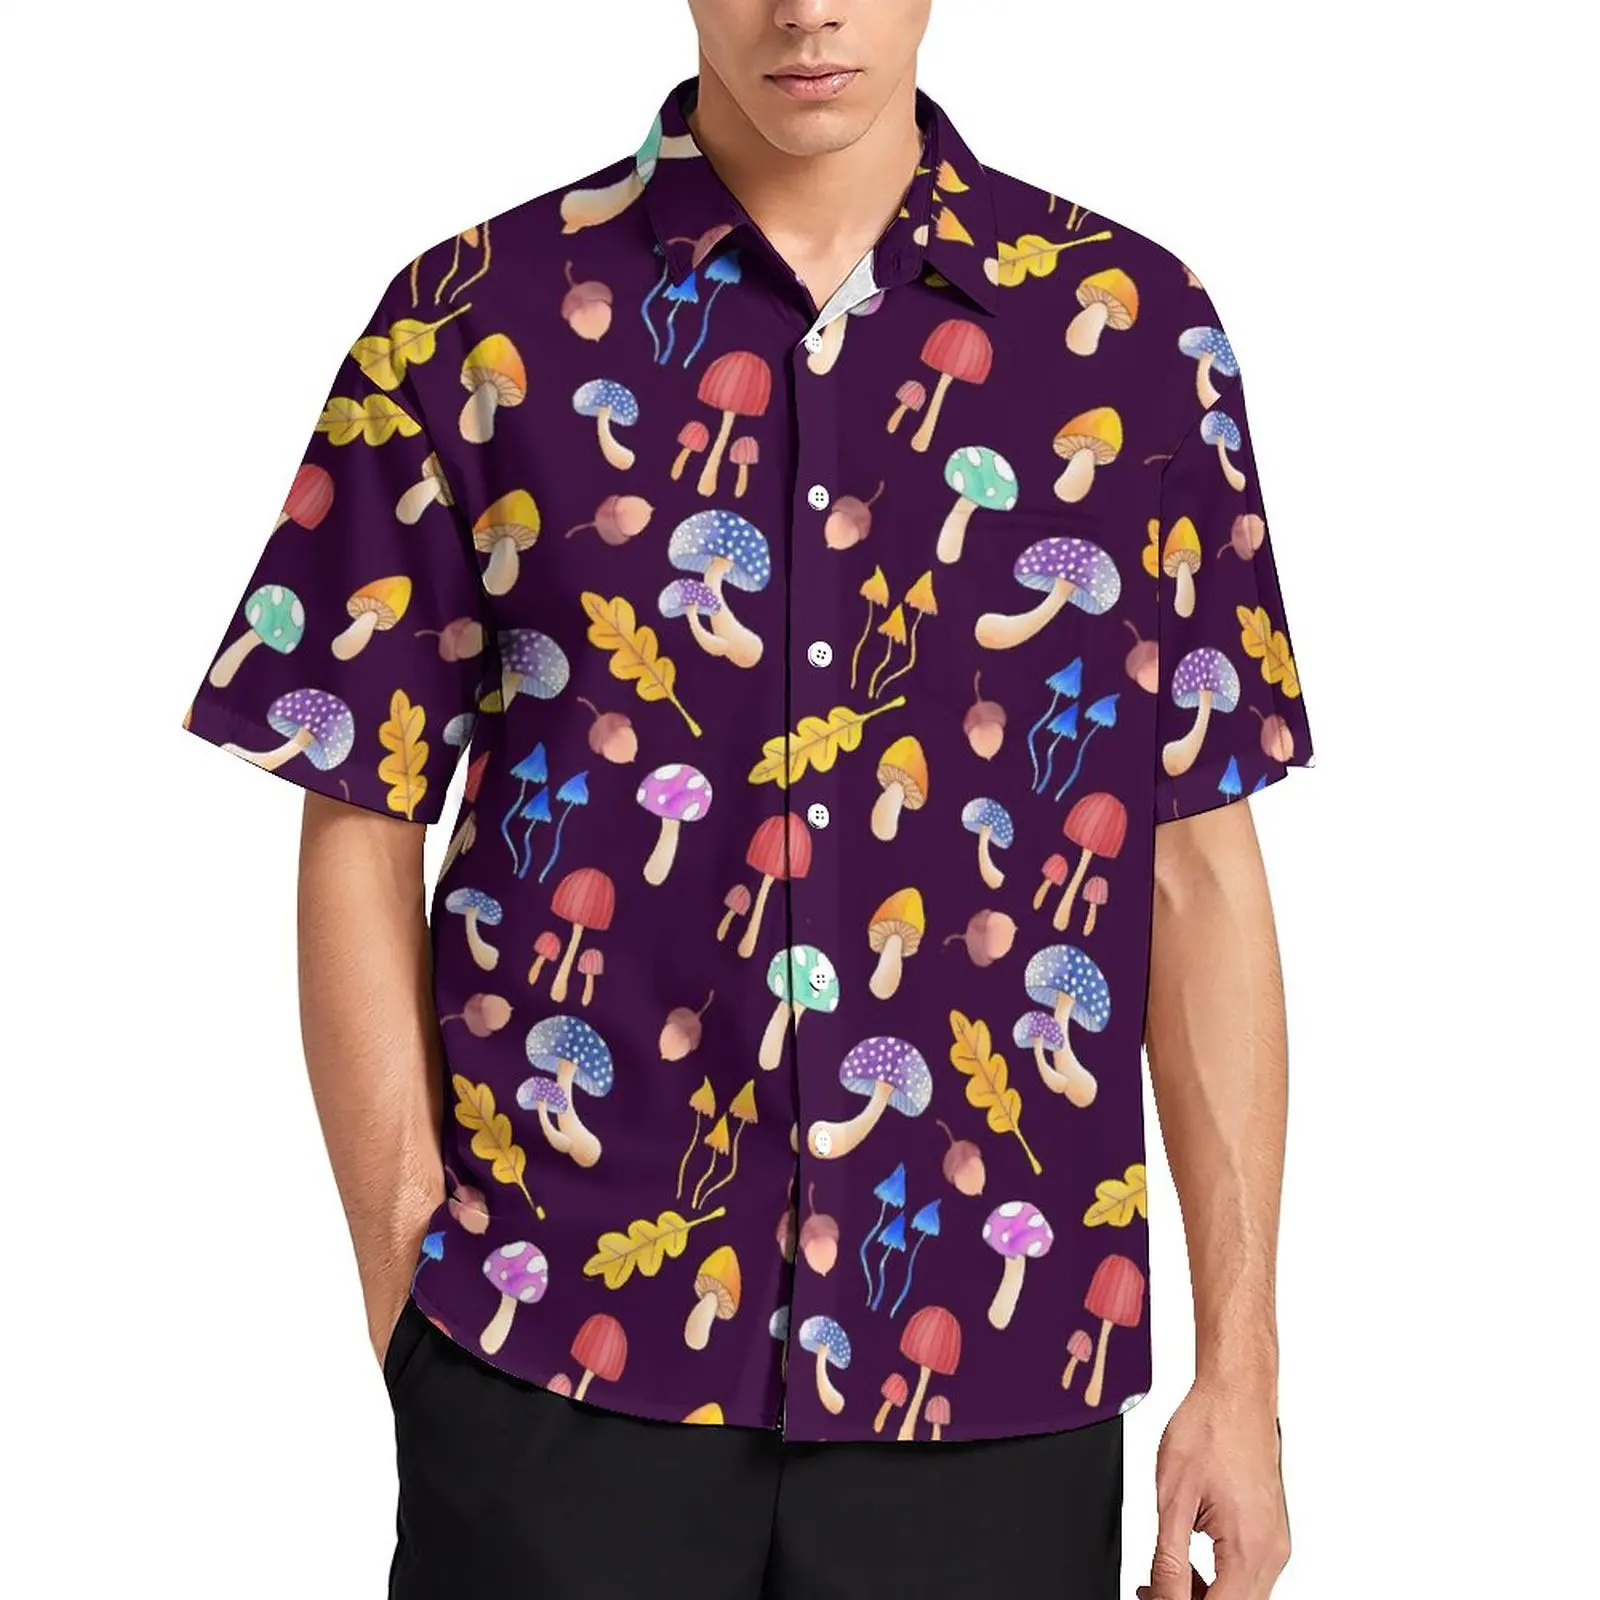 

Magic Mushroom Casual Shirts Colorful Forest Mushrooms Beach Shirt Hawaiian Funny Blouses Men Print 3XL 4XL